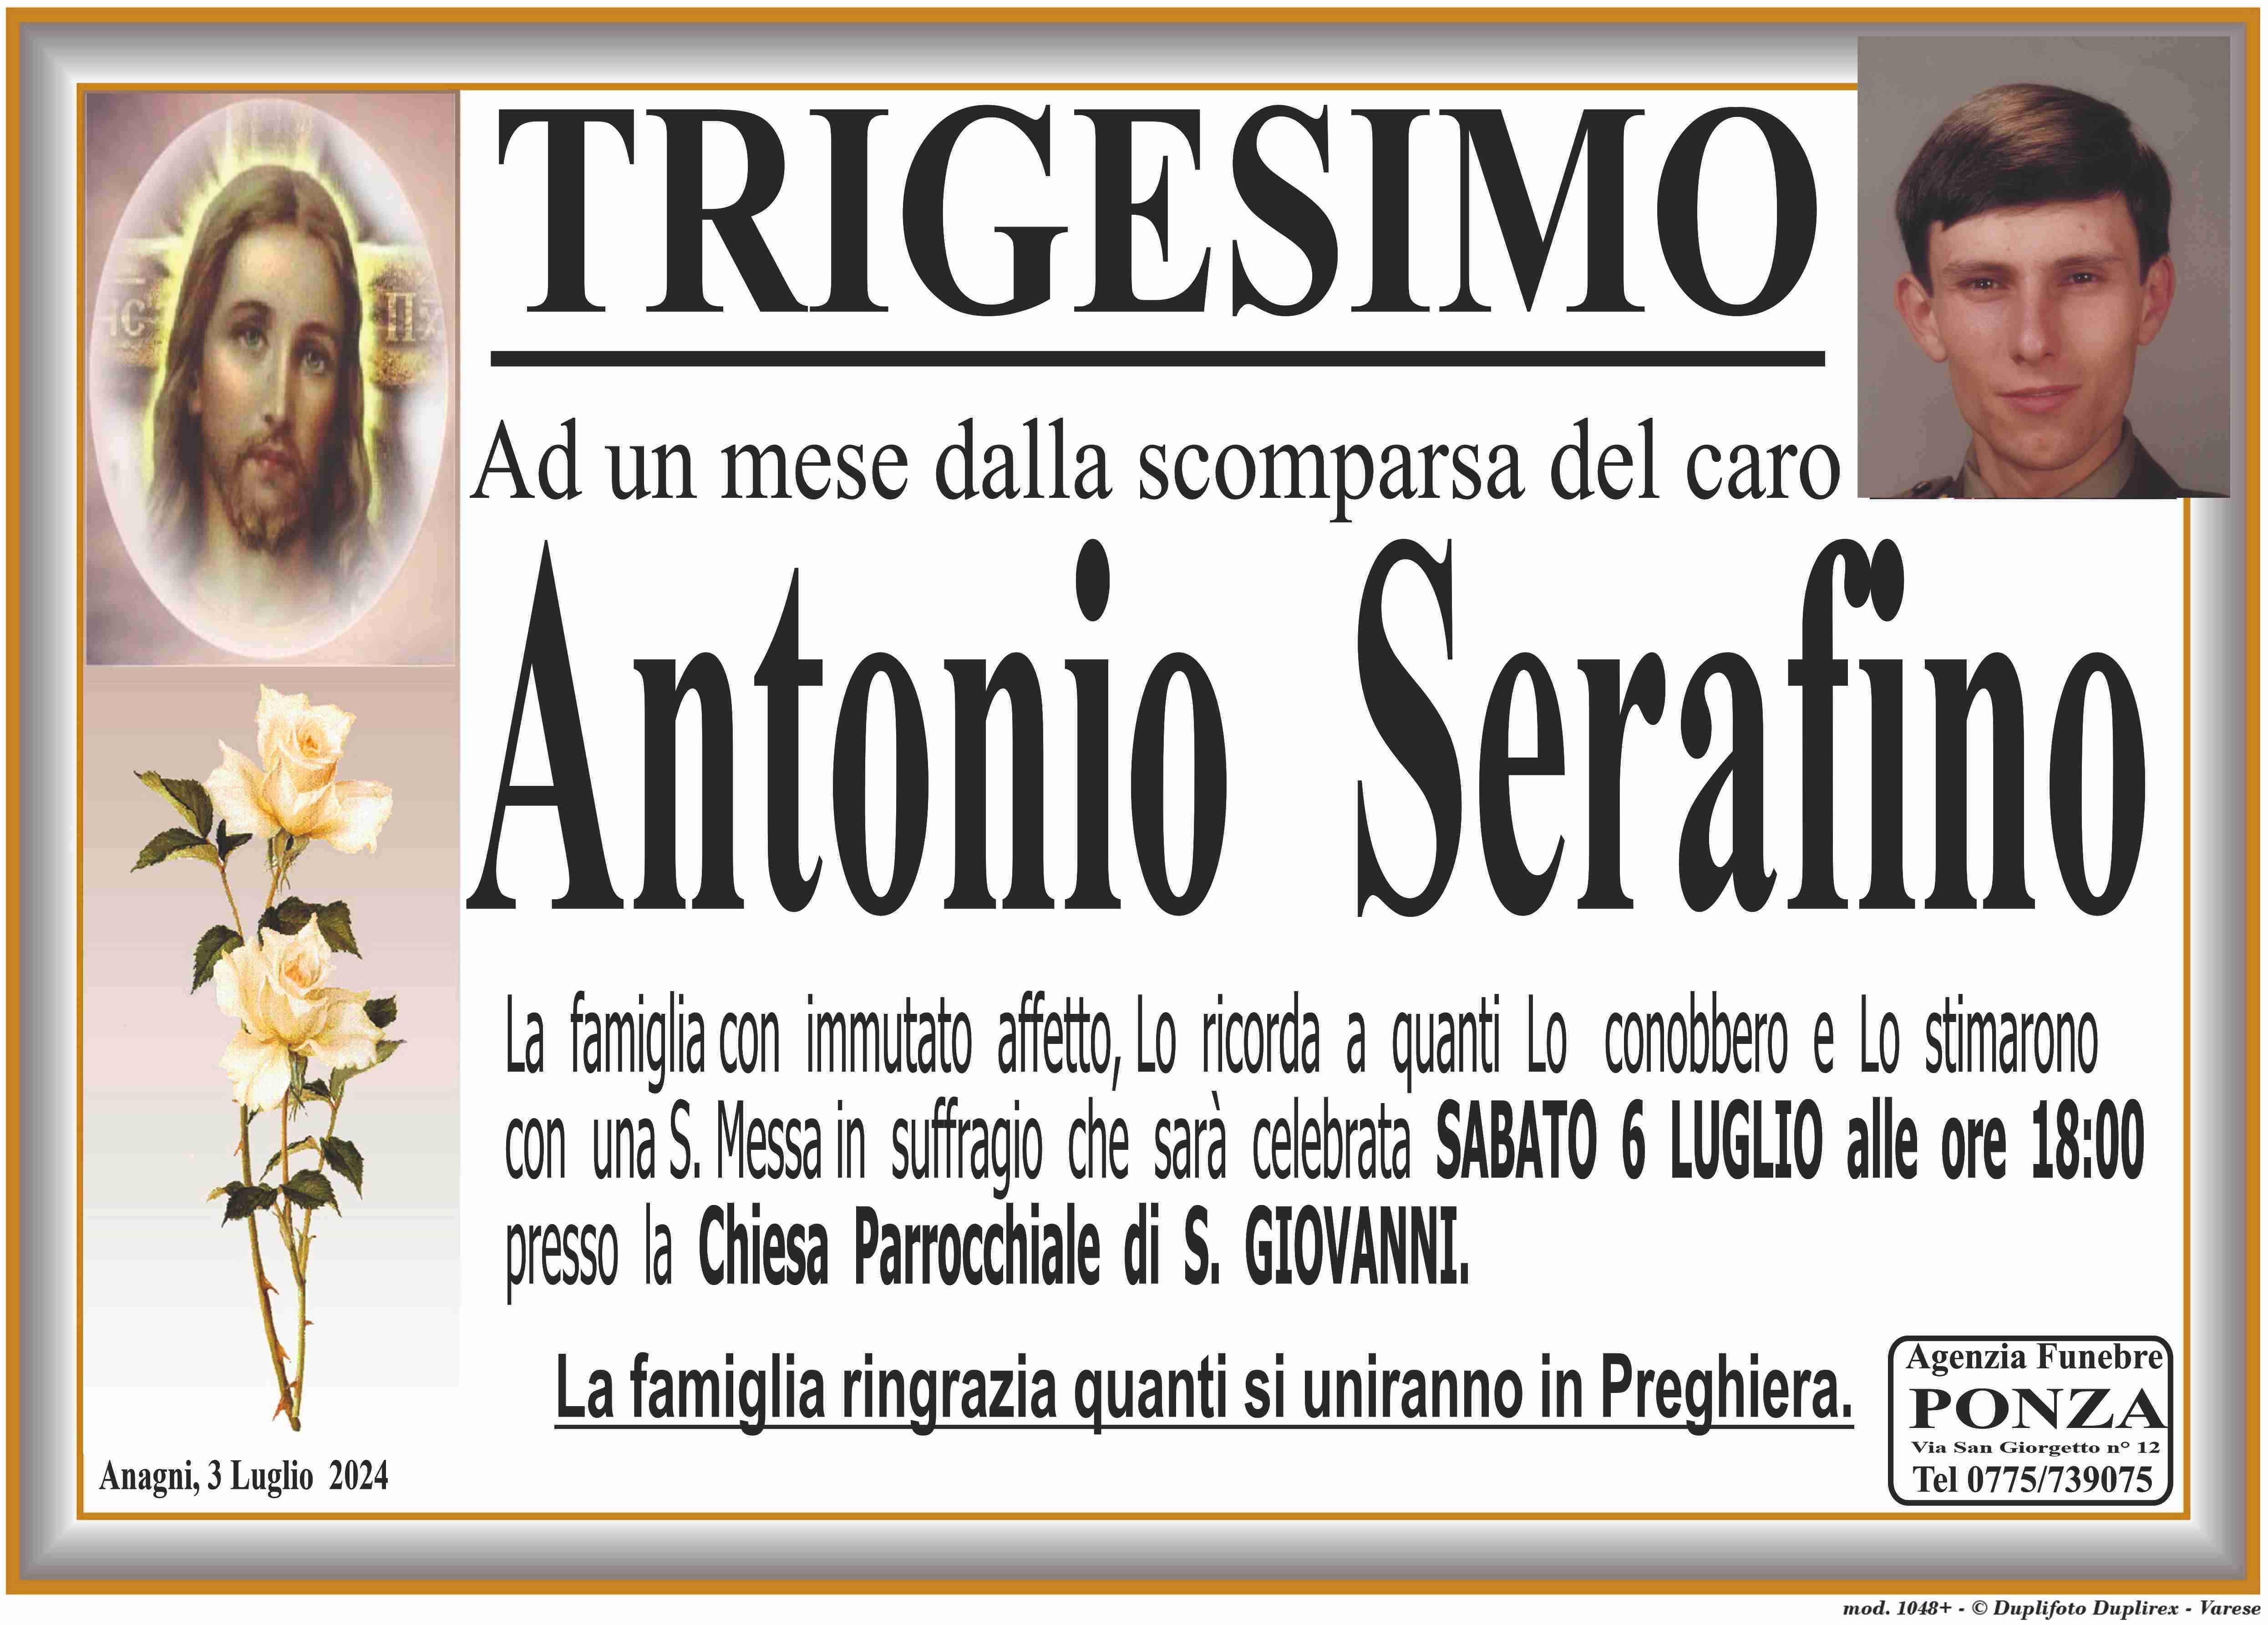 Antonio Serafino